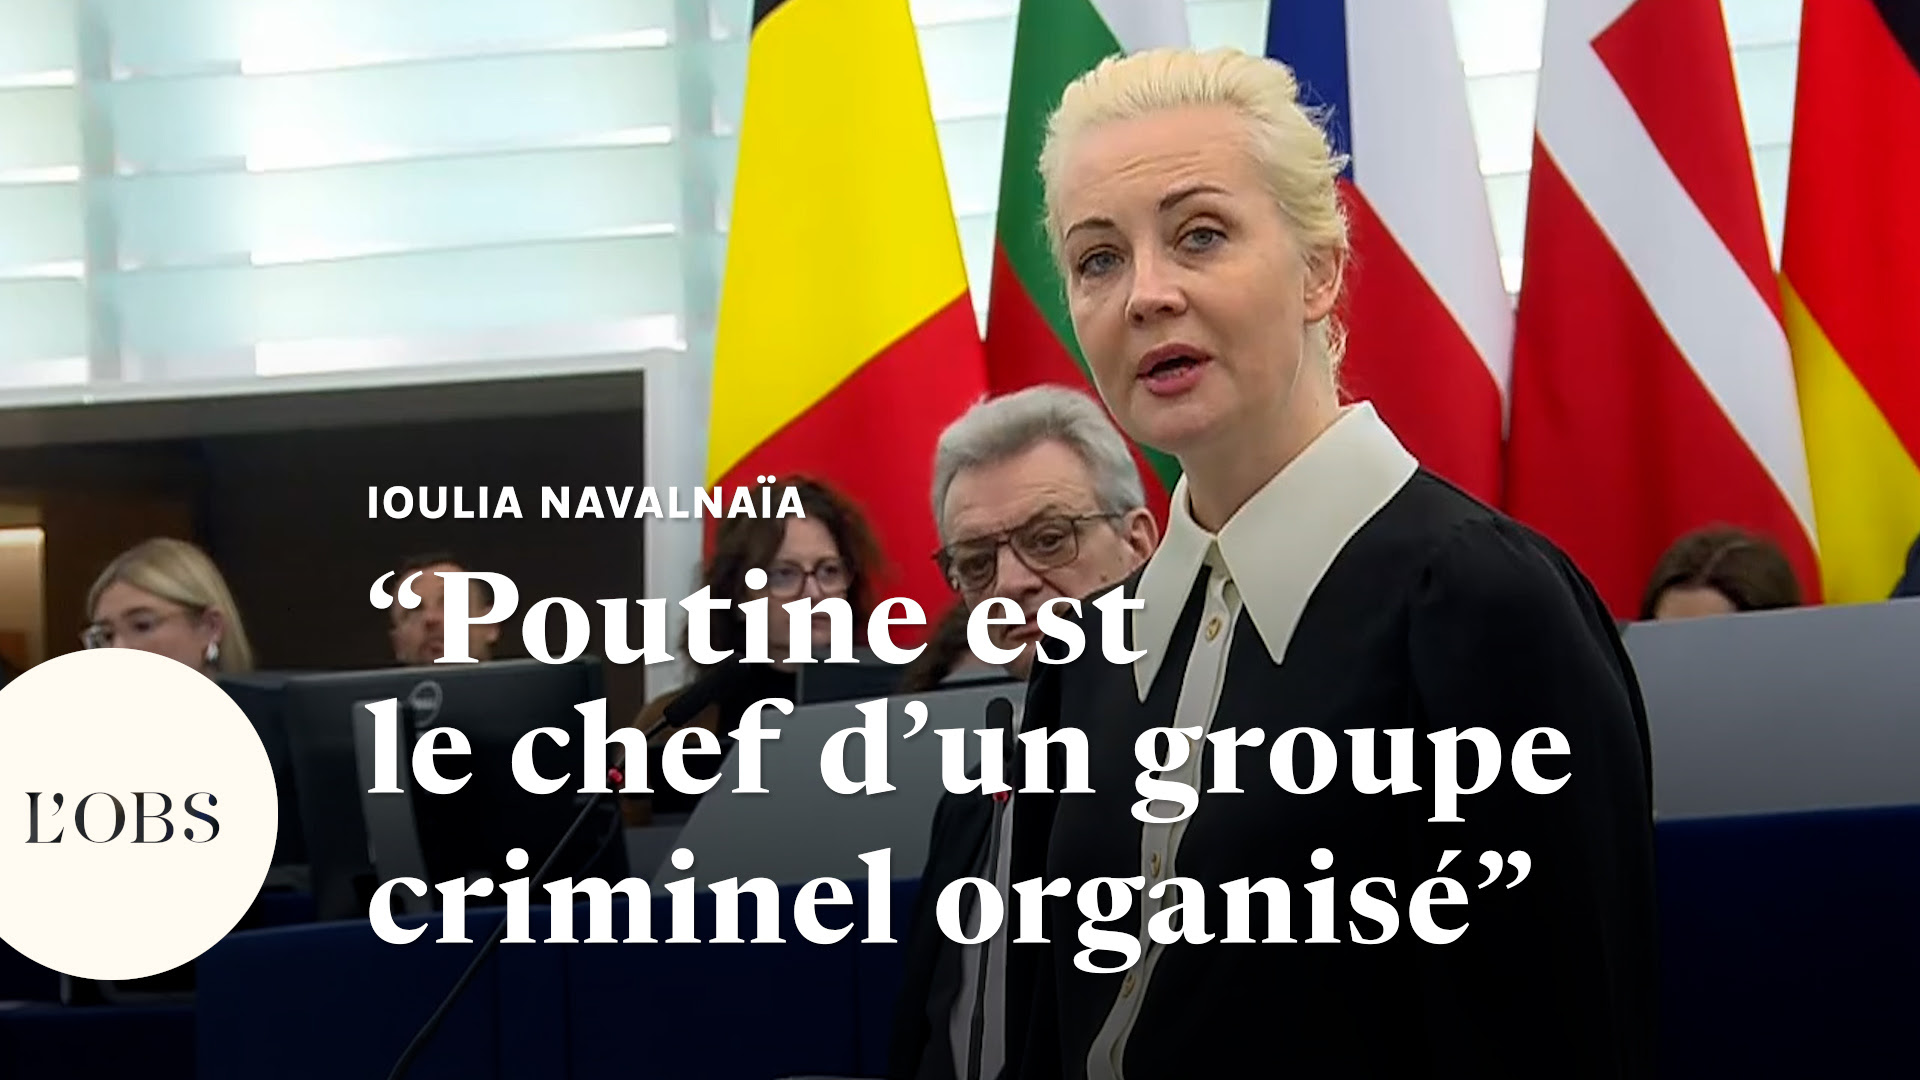 "Poutine est le chef d'un groupe criminel organisé", clame la veuve de Navalny au Parlement européen